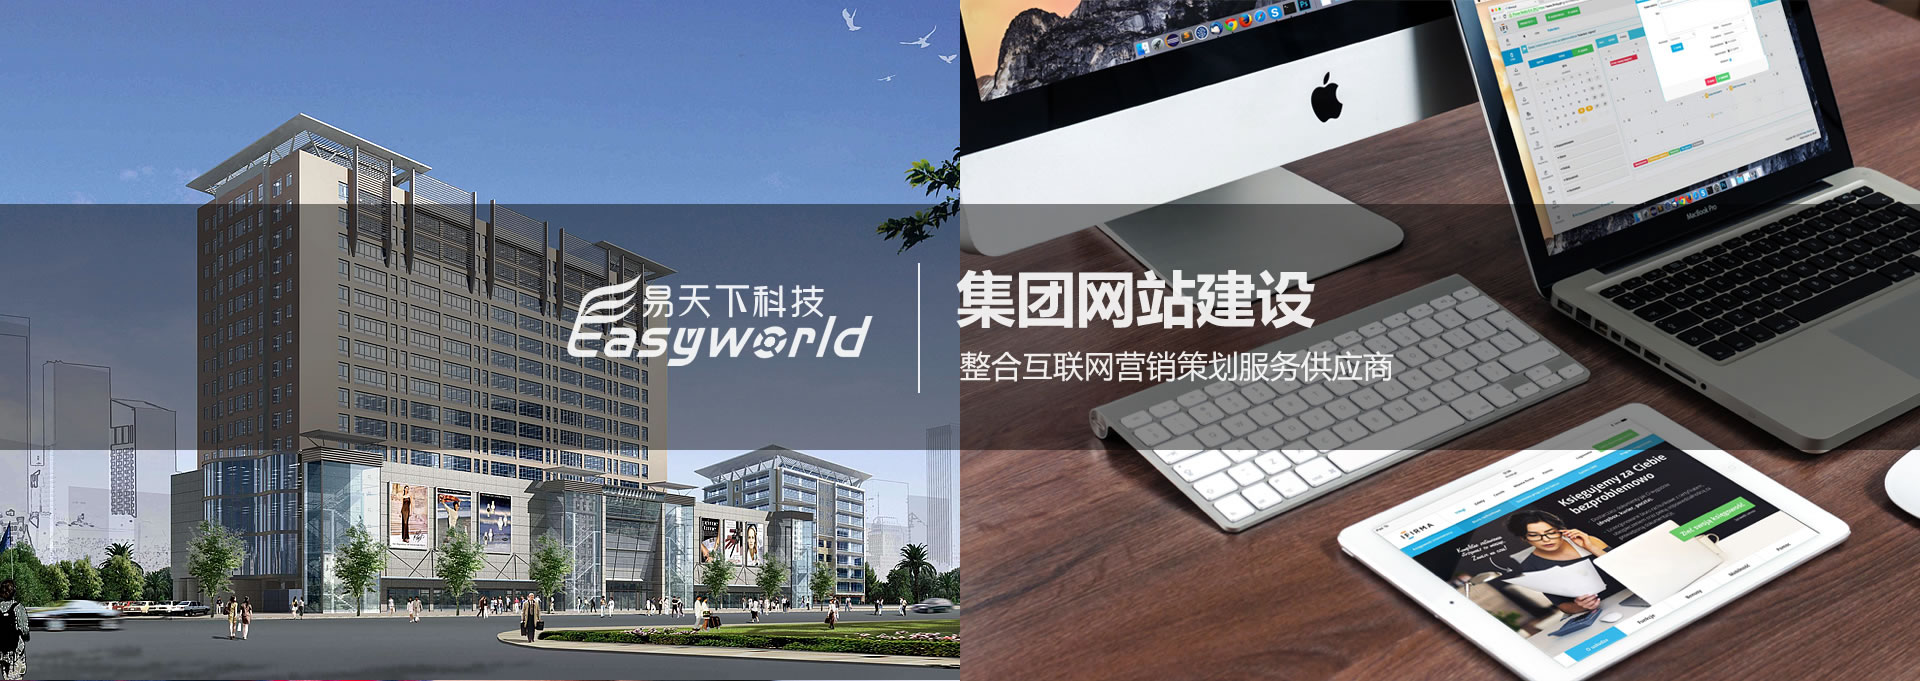 苏州企业网站建，苏州企业网站设计